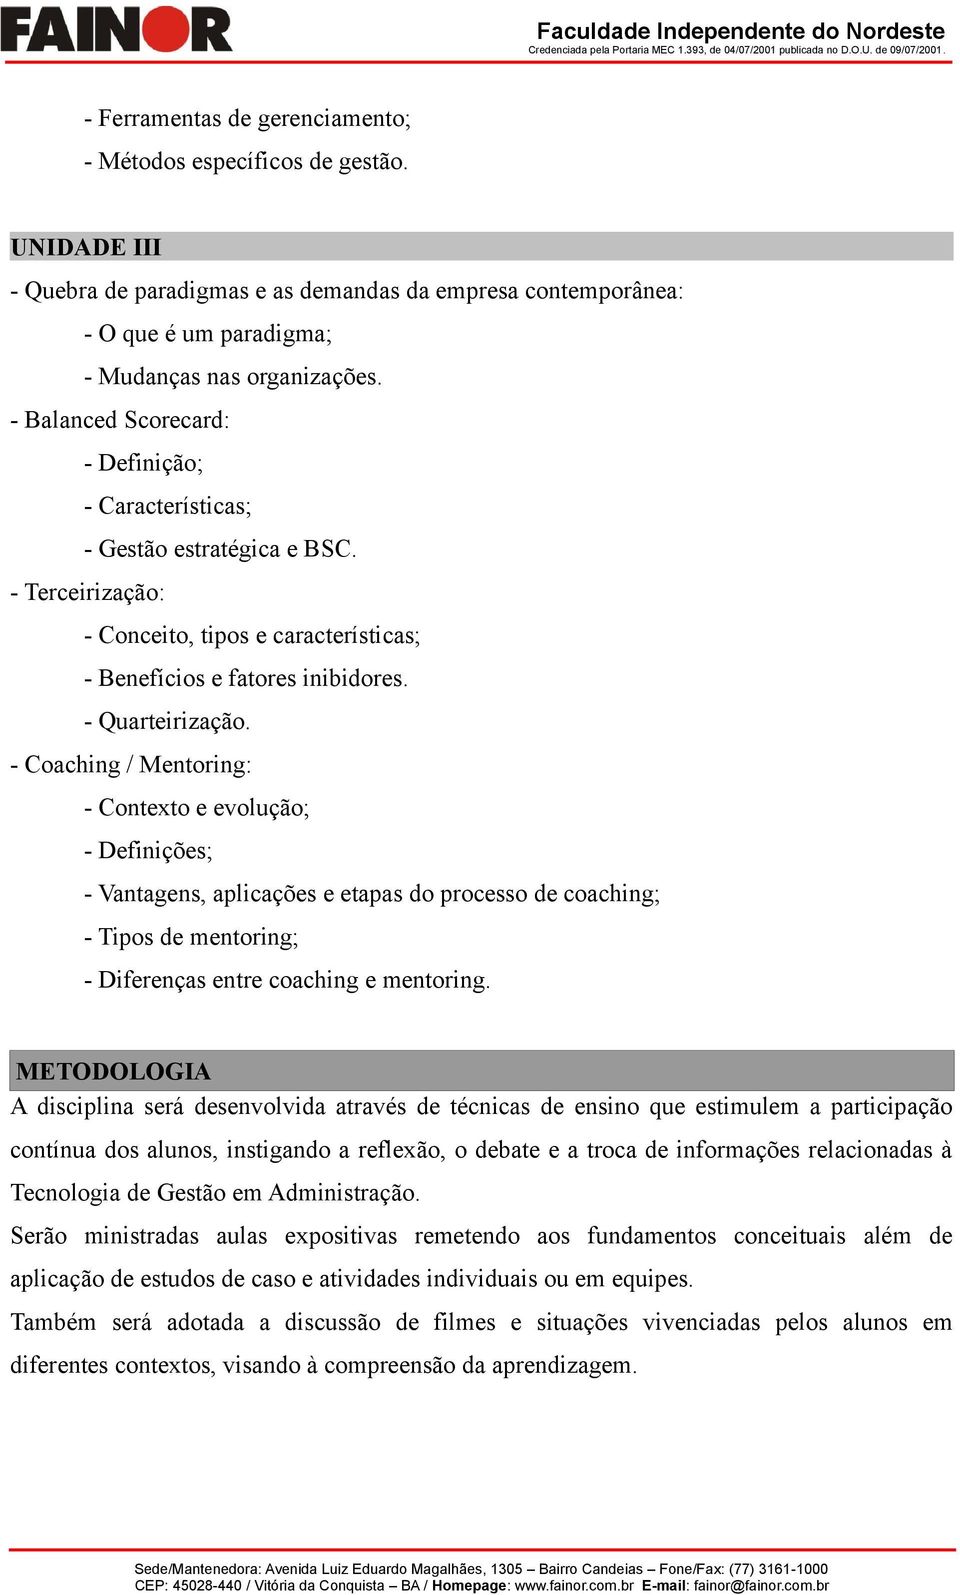 - Coaching / Mentoring: - Contexto e evolução; - Definições; - Vantagens, aplicações e etapas do processo de coaching; - Tipos de mentoring; - Diferenças entre coaching e mentoring.